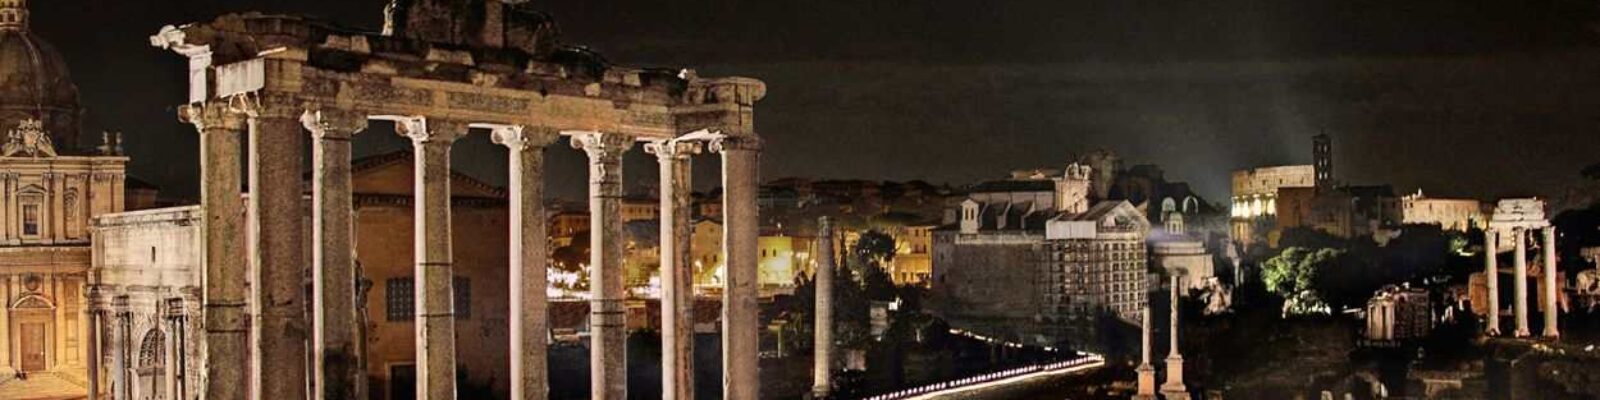 Rome Imperial Forums illuminazione notturna - illuminazione musei